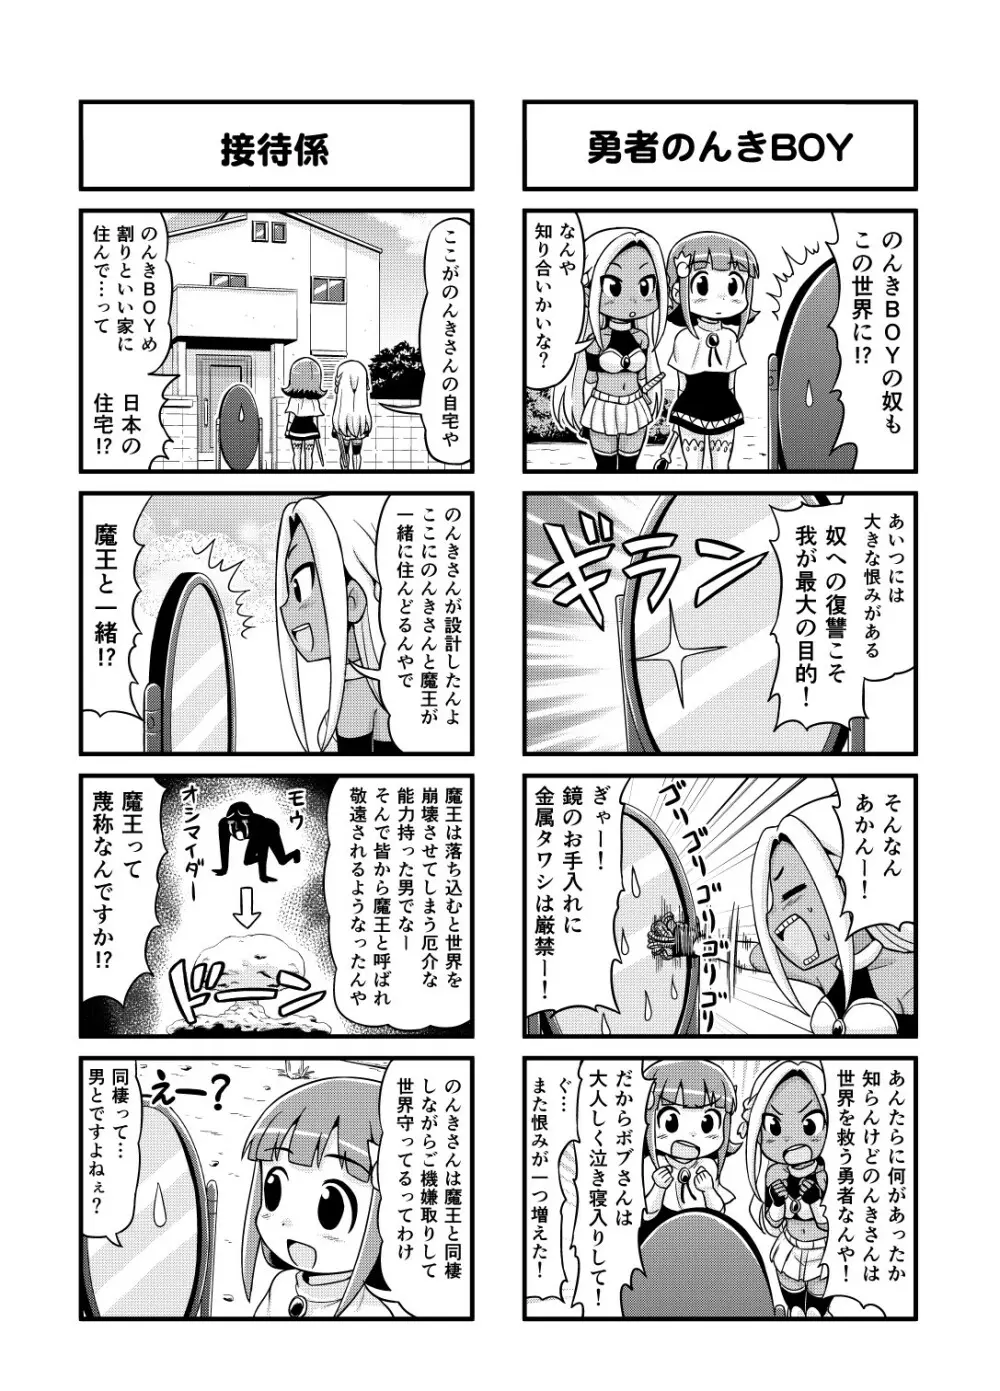 のんきBOY 1-48 - page87